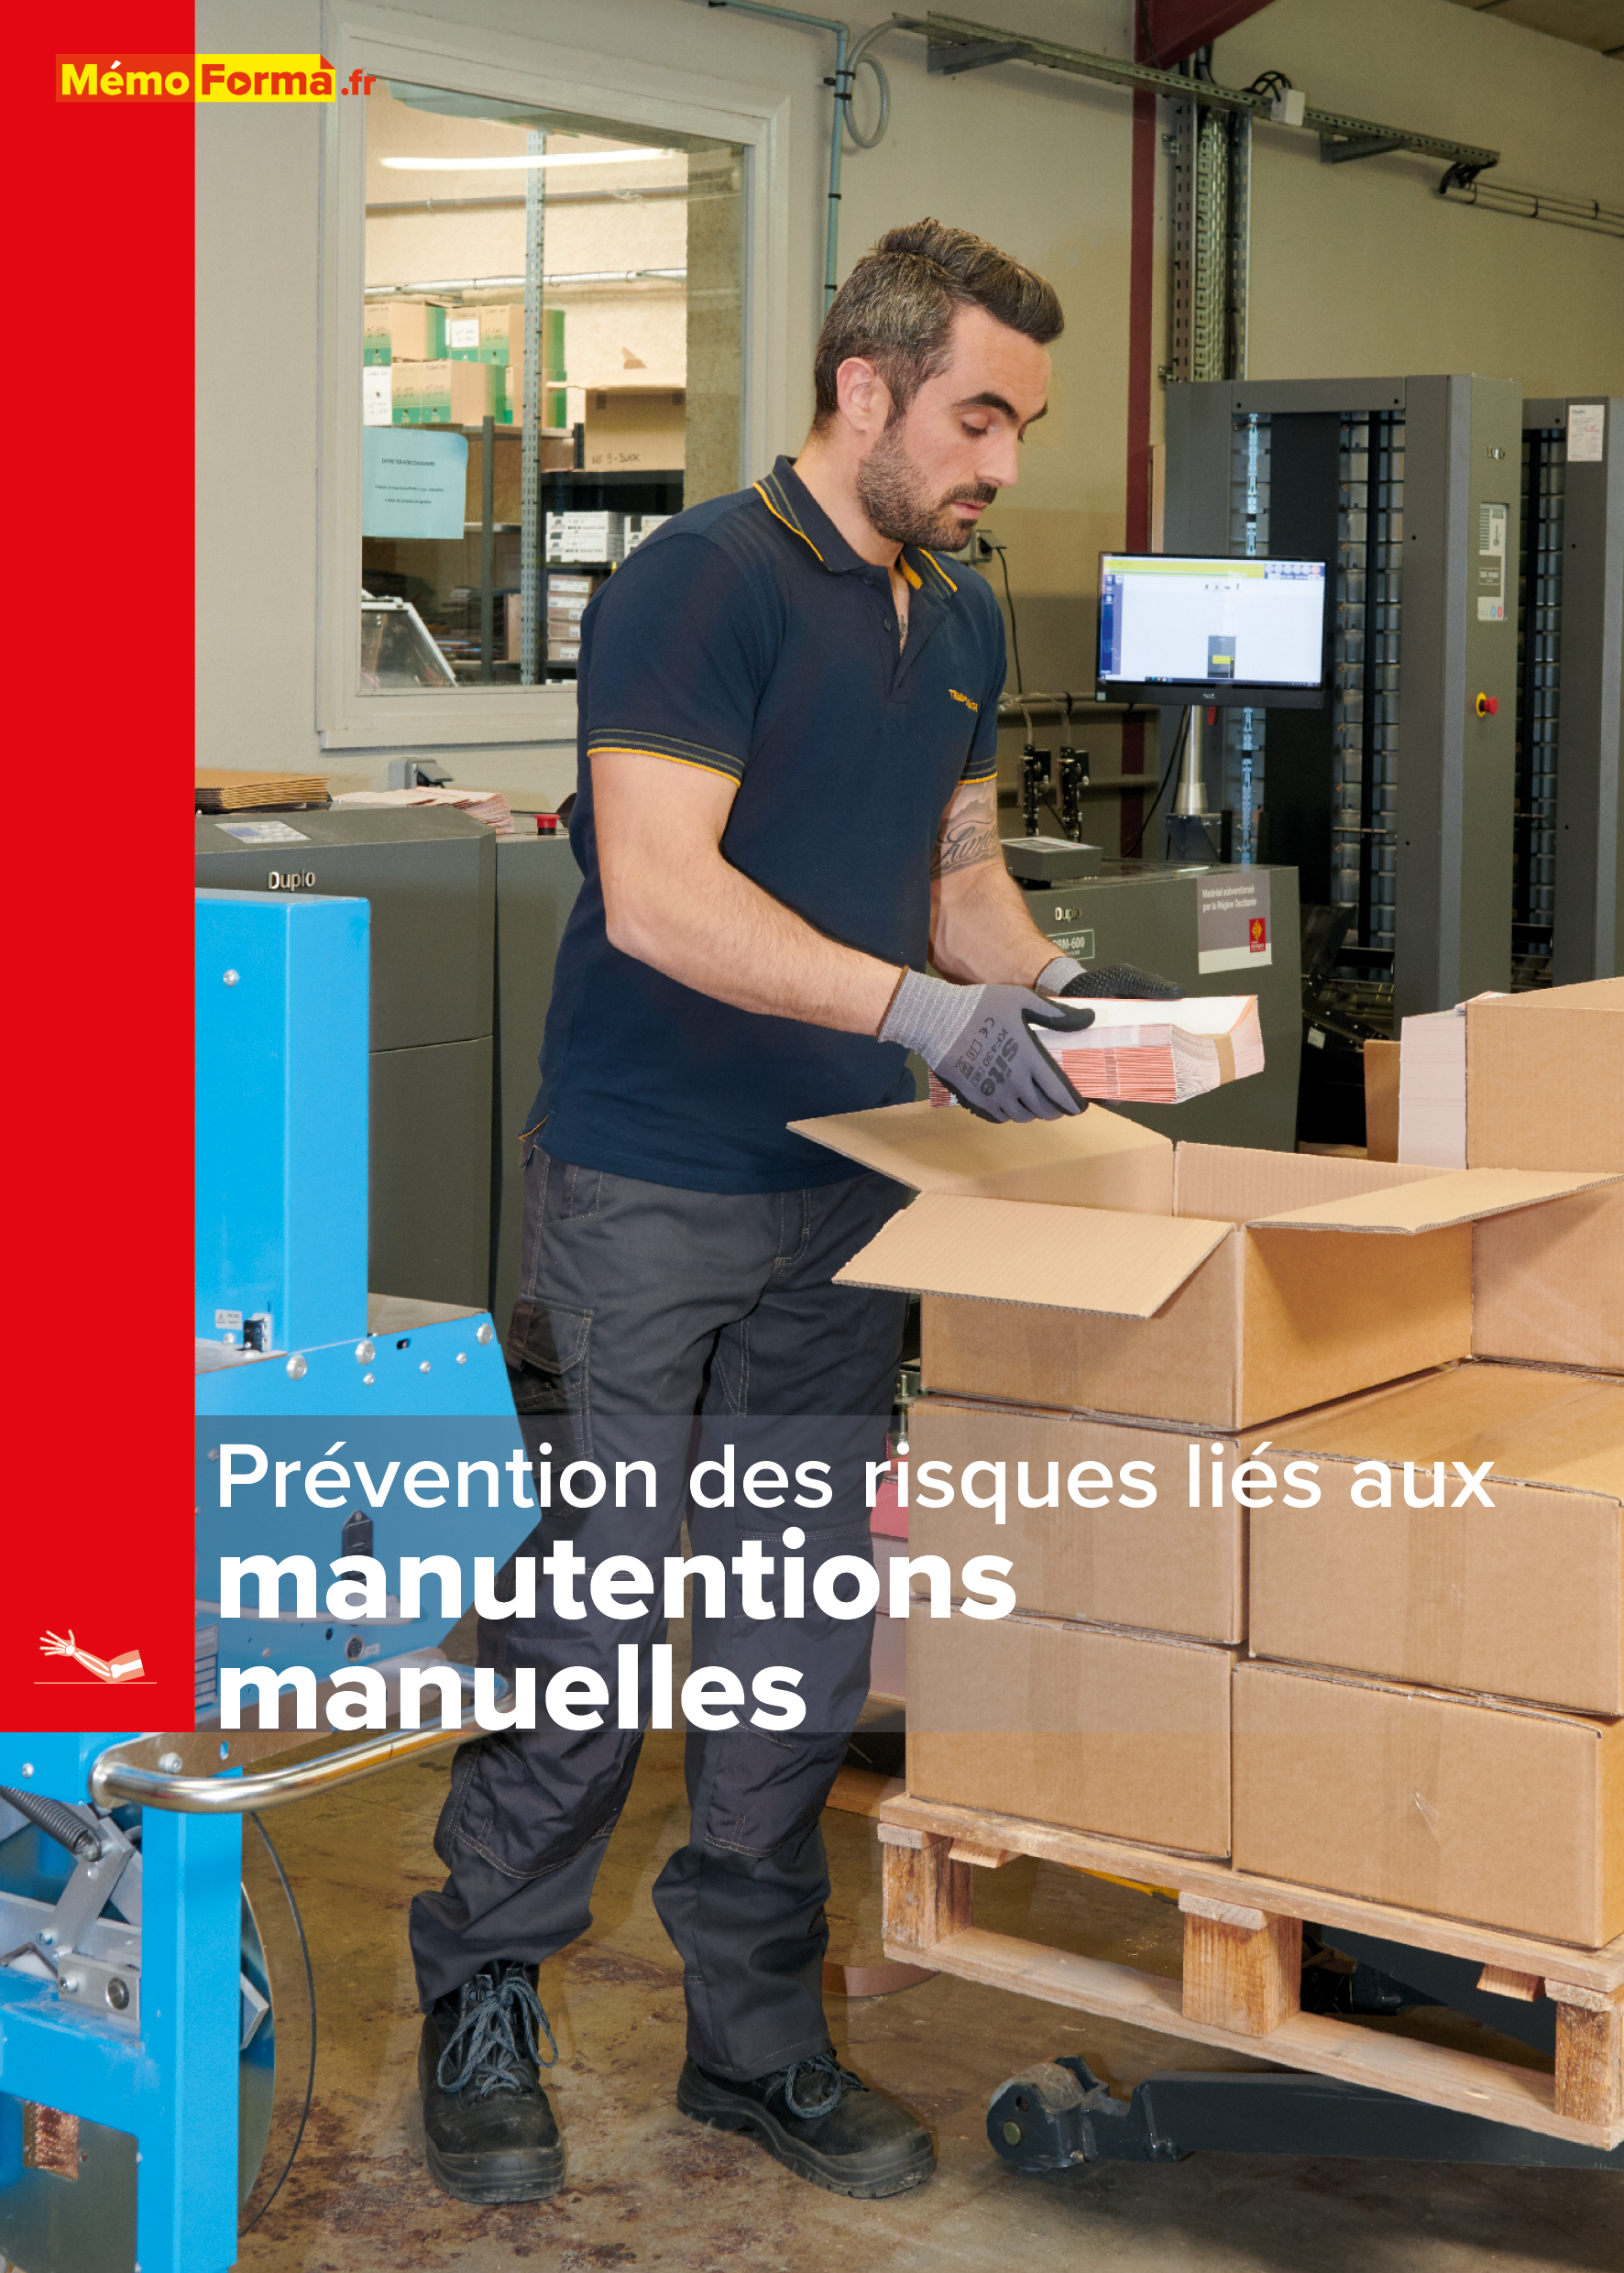 Manuel de formation – Prévention des risques liés aux manutentions manuelles - MémoForma.fr